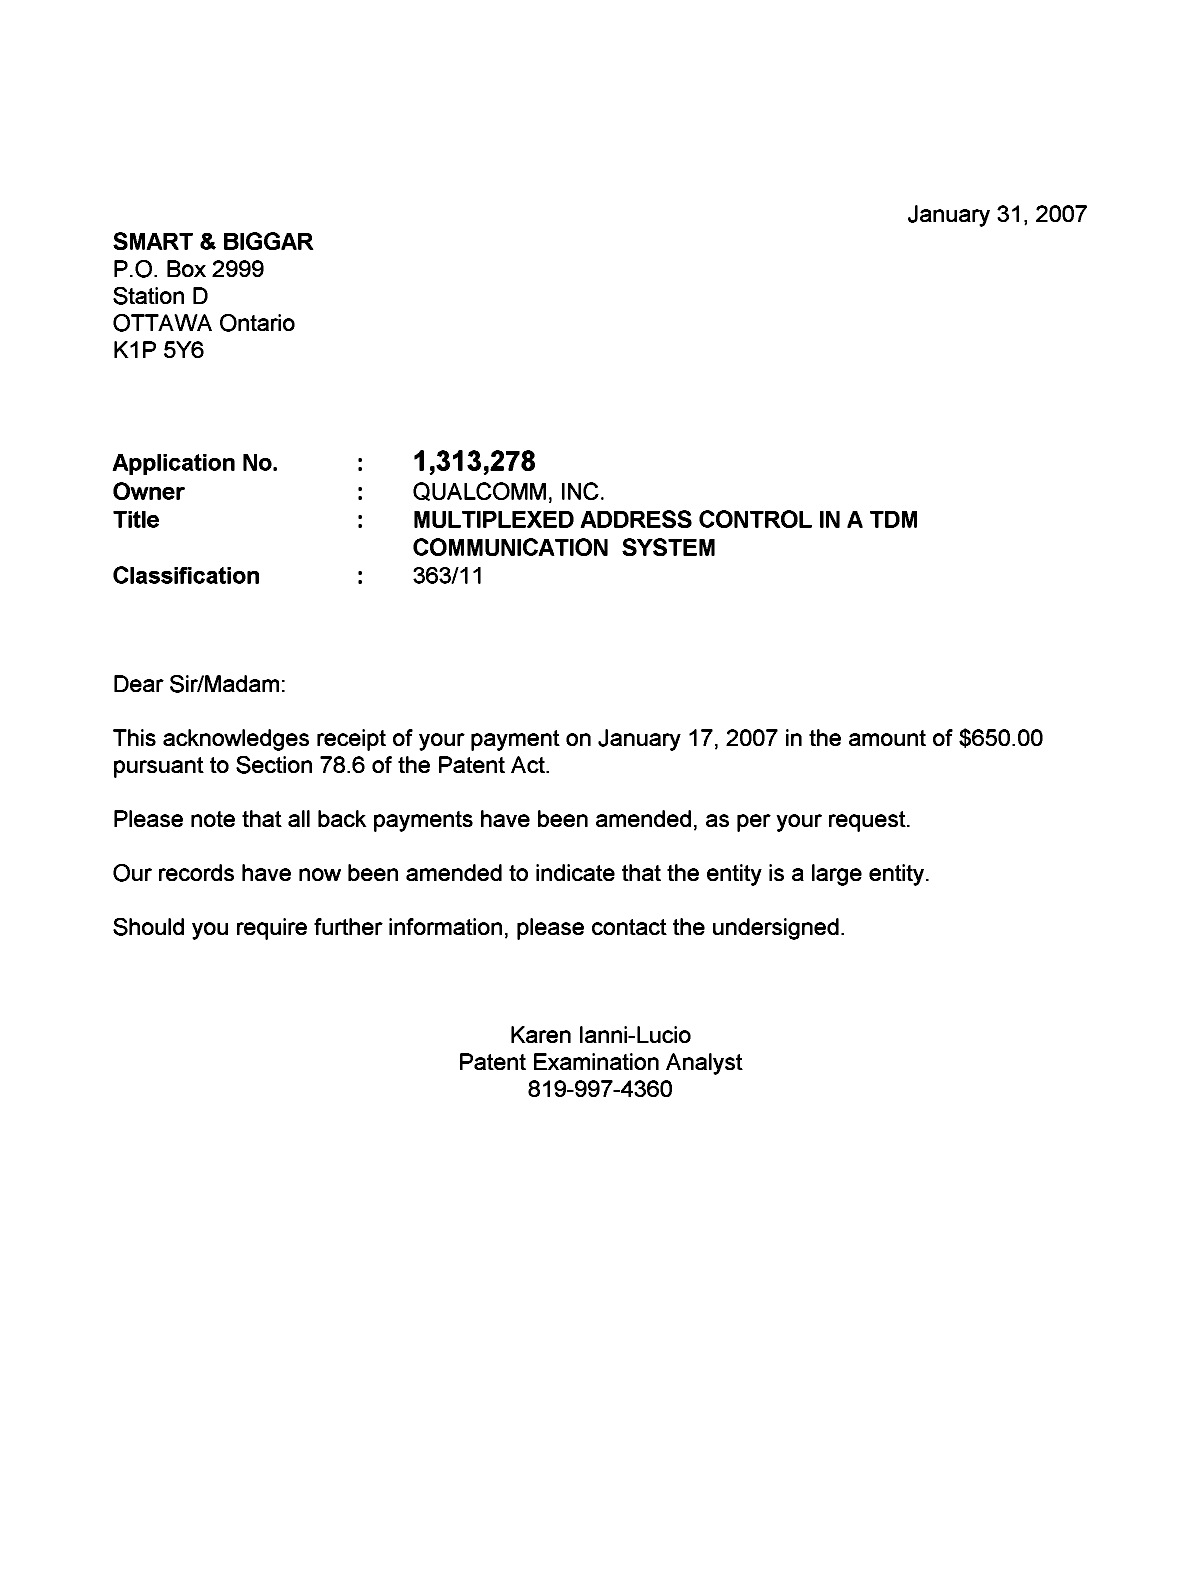 Document de brevet canadien 1313278. Correspondance 20070131. Image 1 de 1